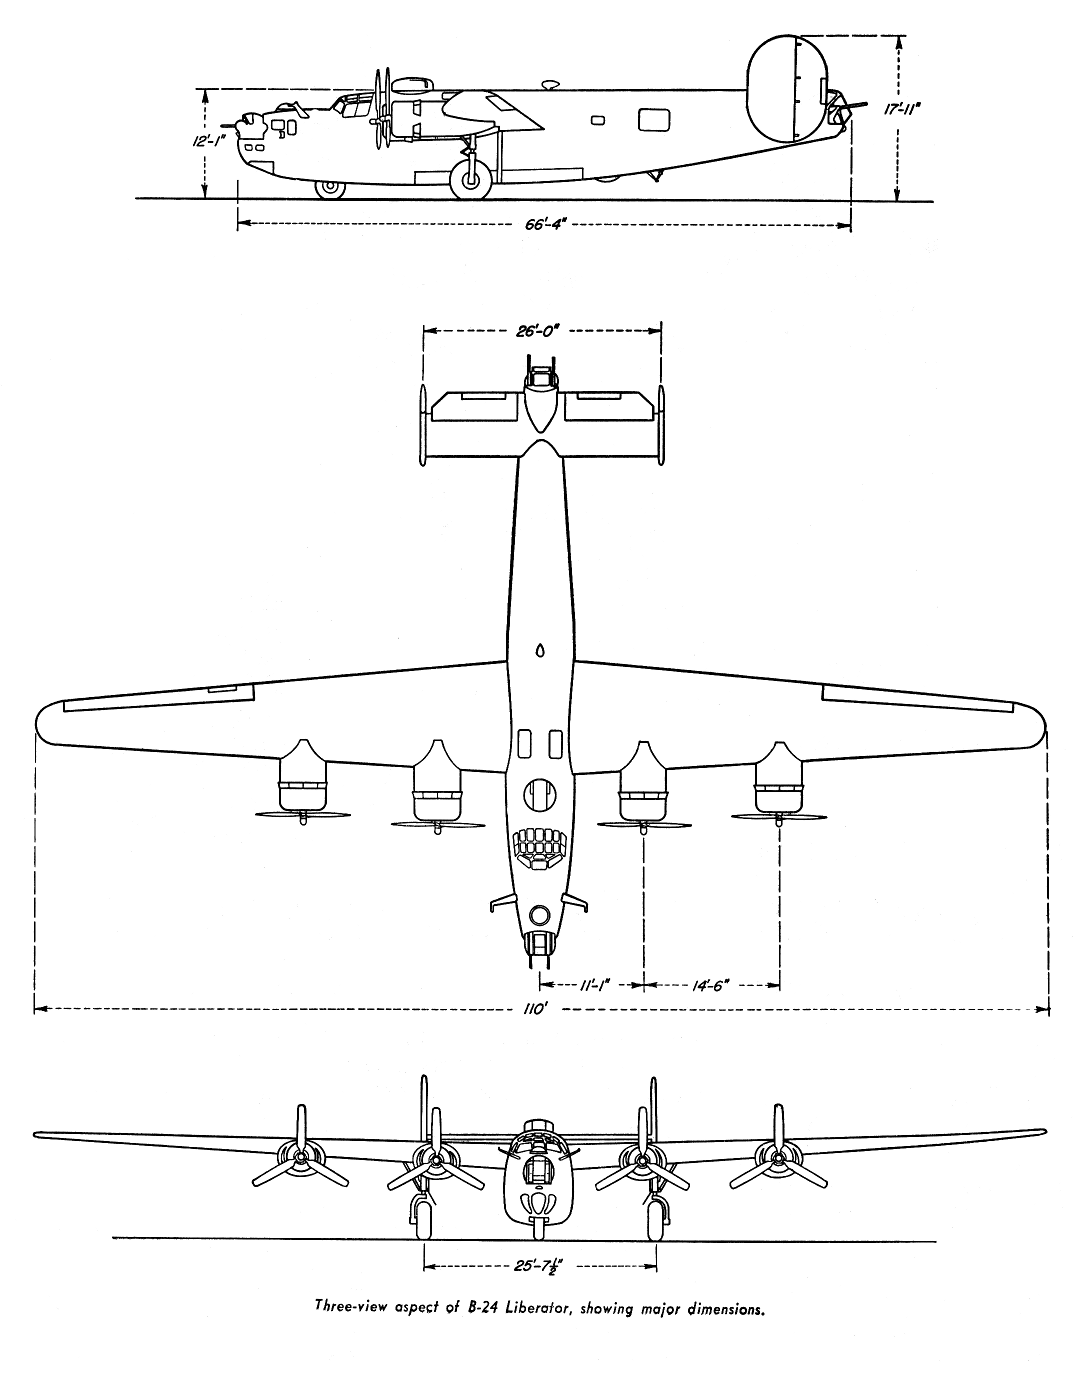 Consolidated b-24 «liberator» - cамый массовый американский самолёт второ мировой войны | красные соколы нашей родиныкрасные соколы нашей родины